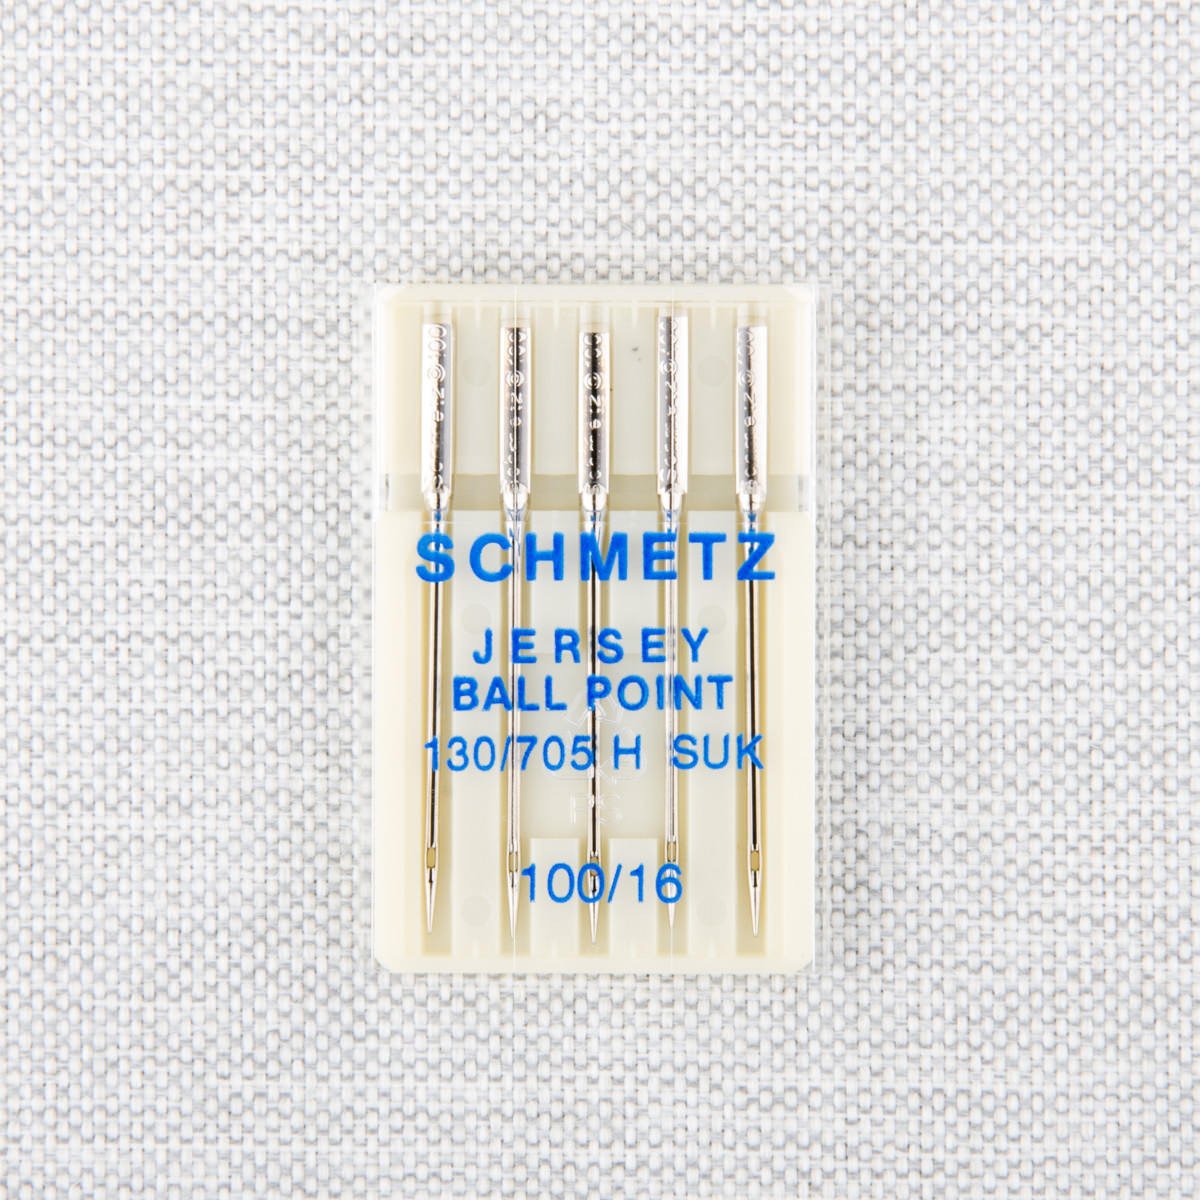 Schmetz Schmetz #1799 Jersey ball point needles - 100/16 - 5 count